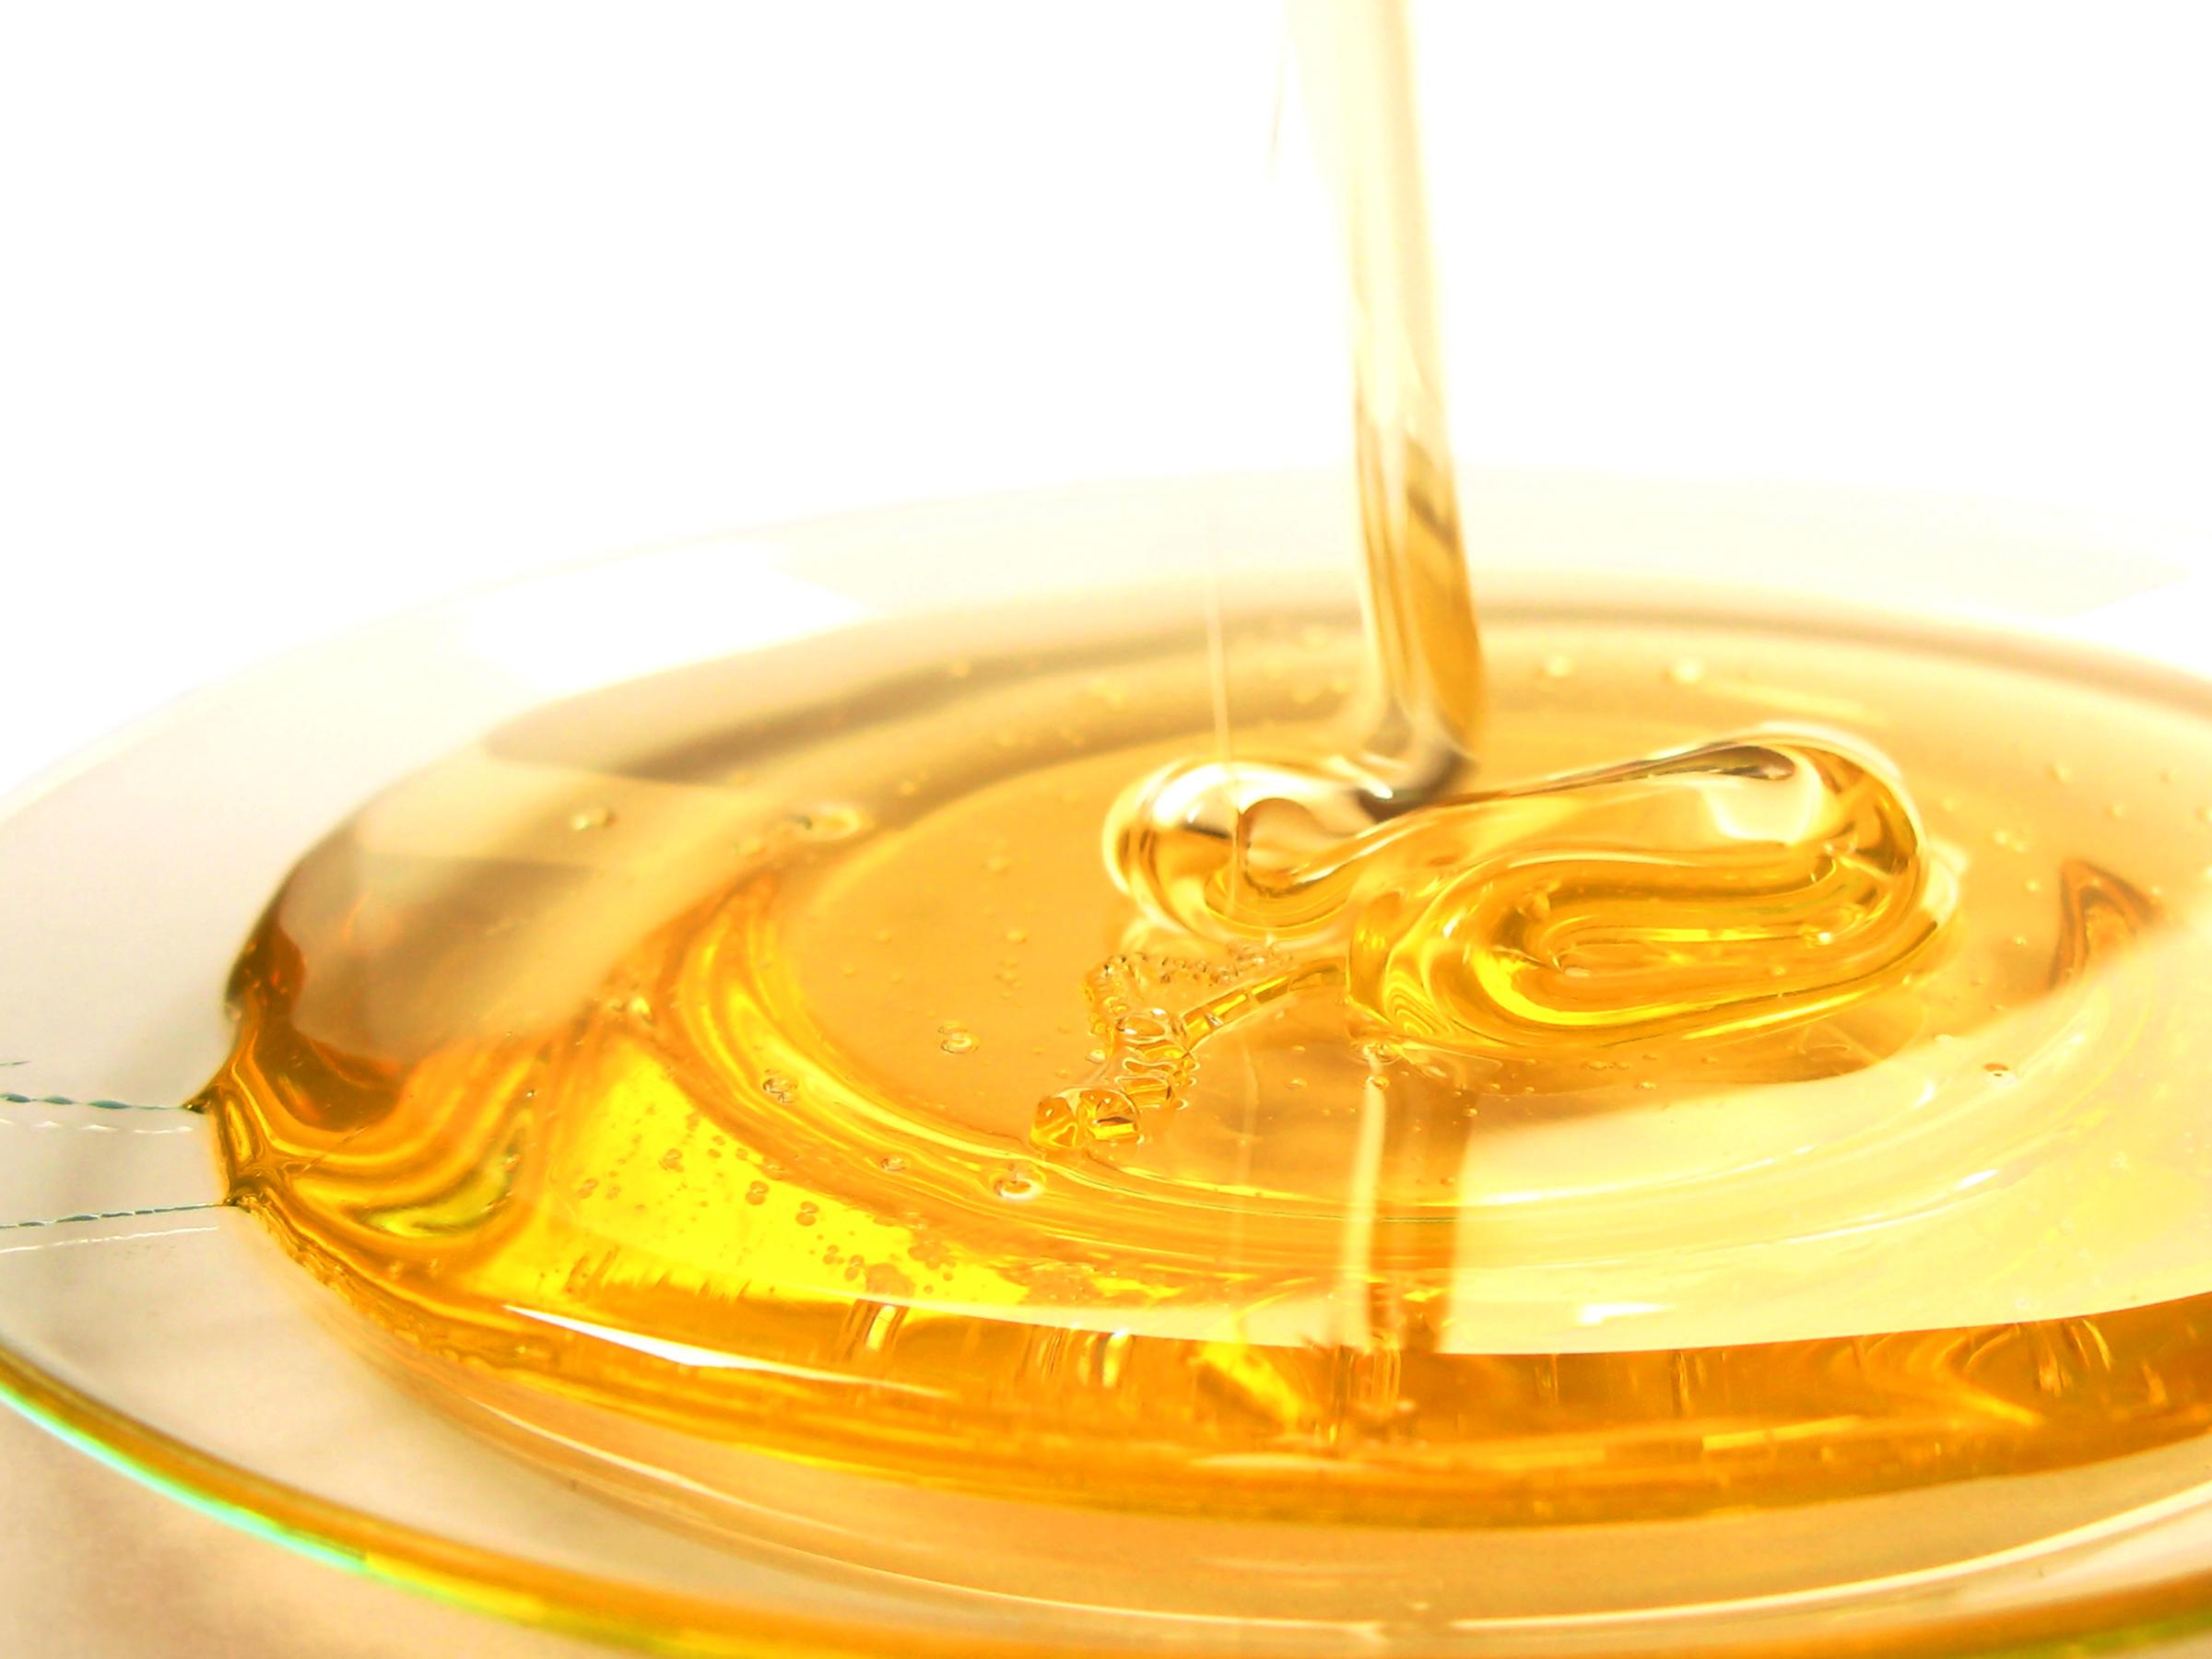 فروش عسل طبیعی دماوند (دهنار)